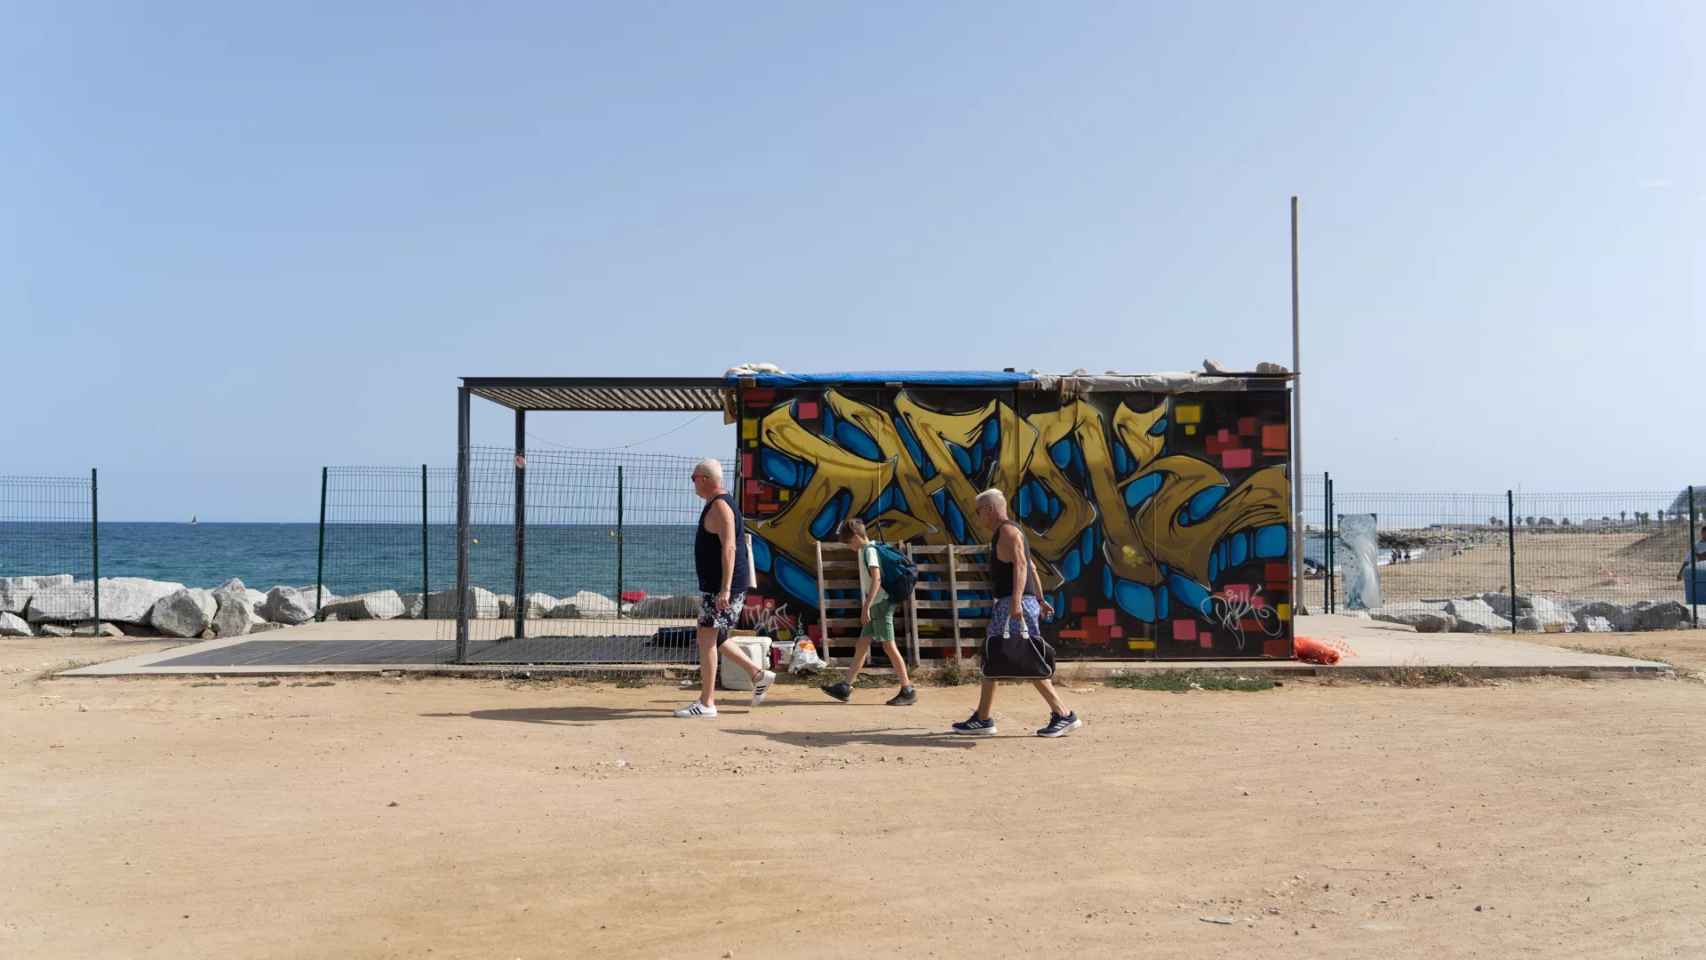 La abandonada caseta de socorrista en la playa de Sant Adrià de Besòs  / GALA ESPÍN